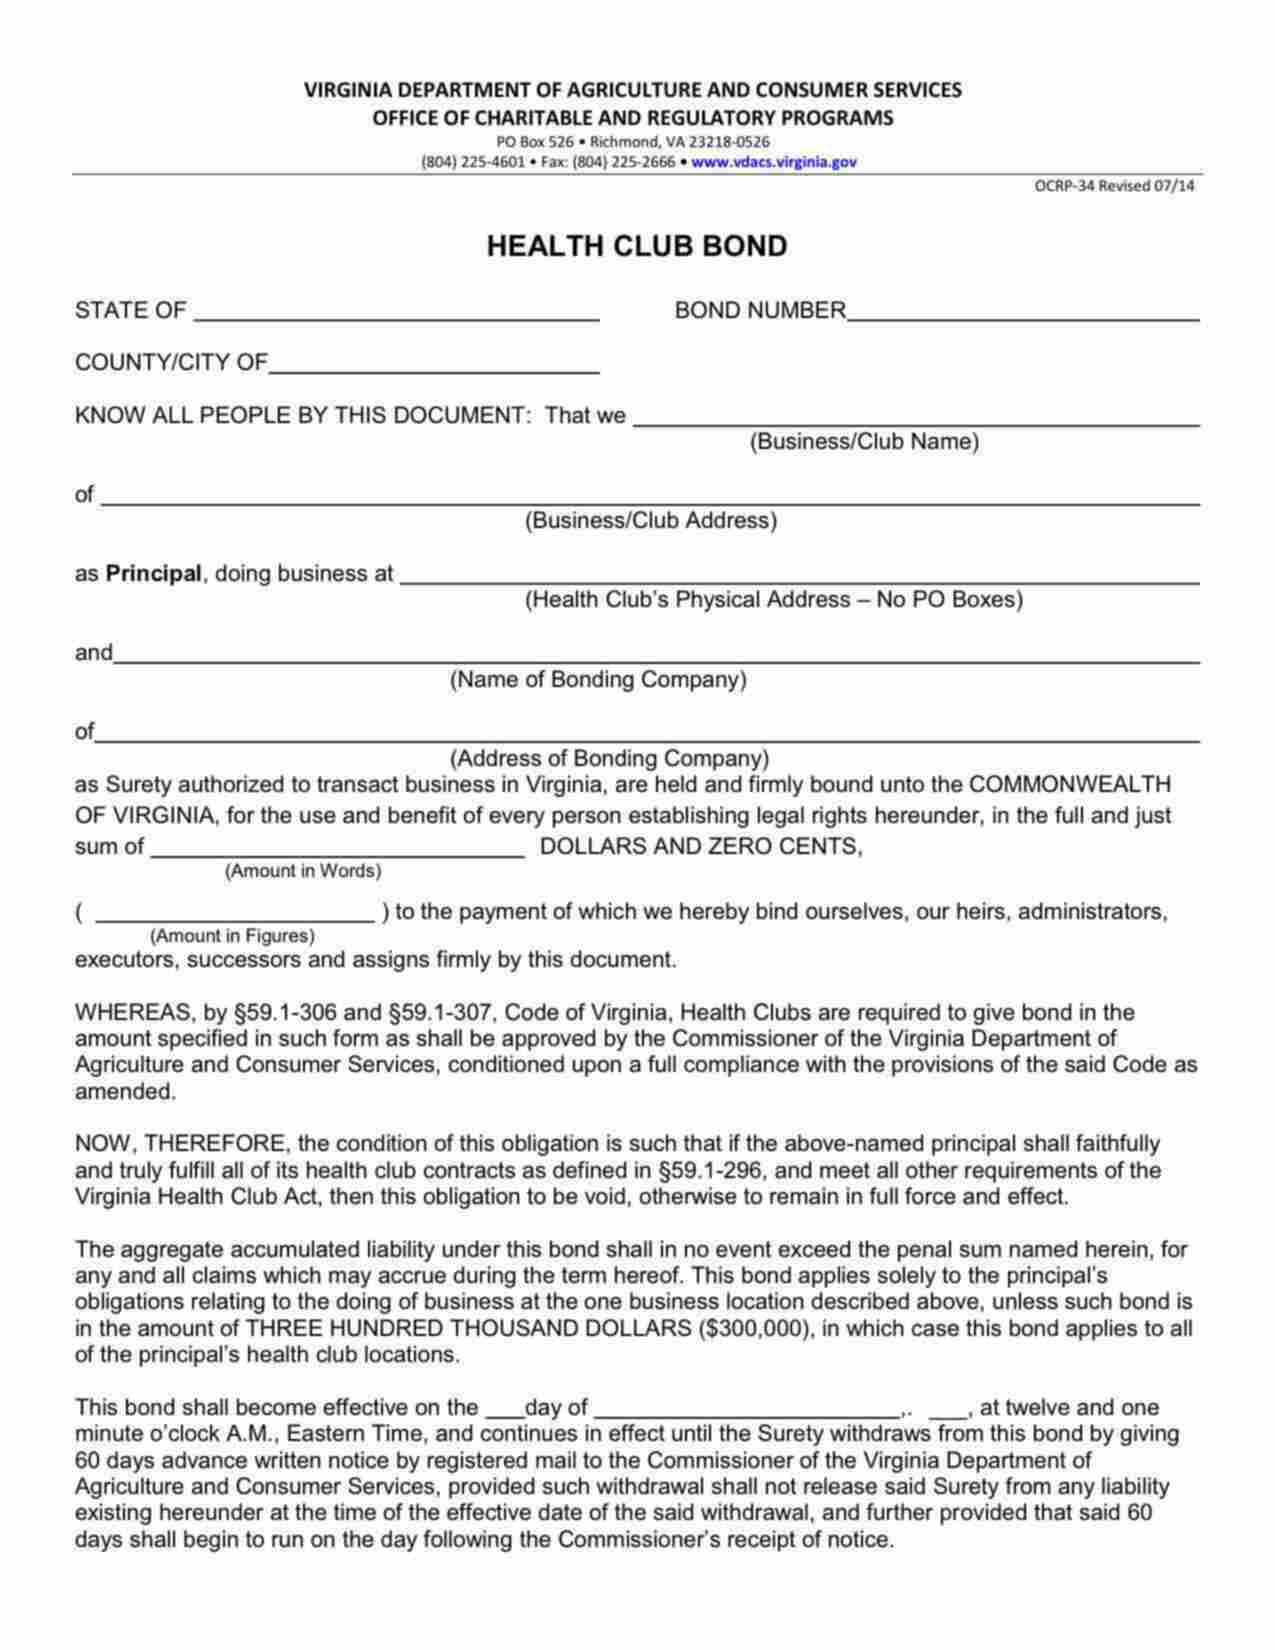 Virginia Health Club Bond Form